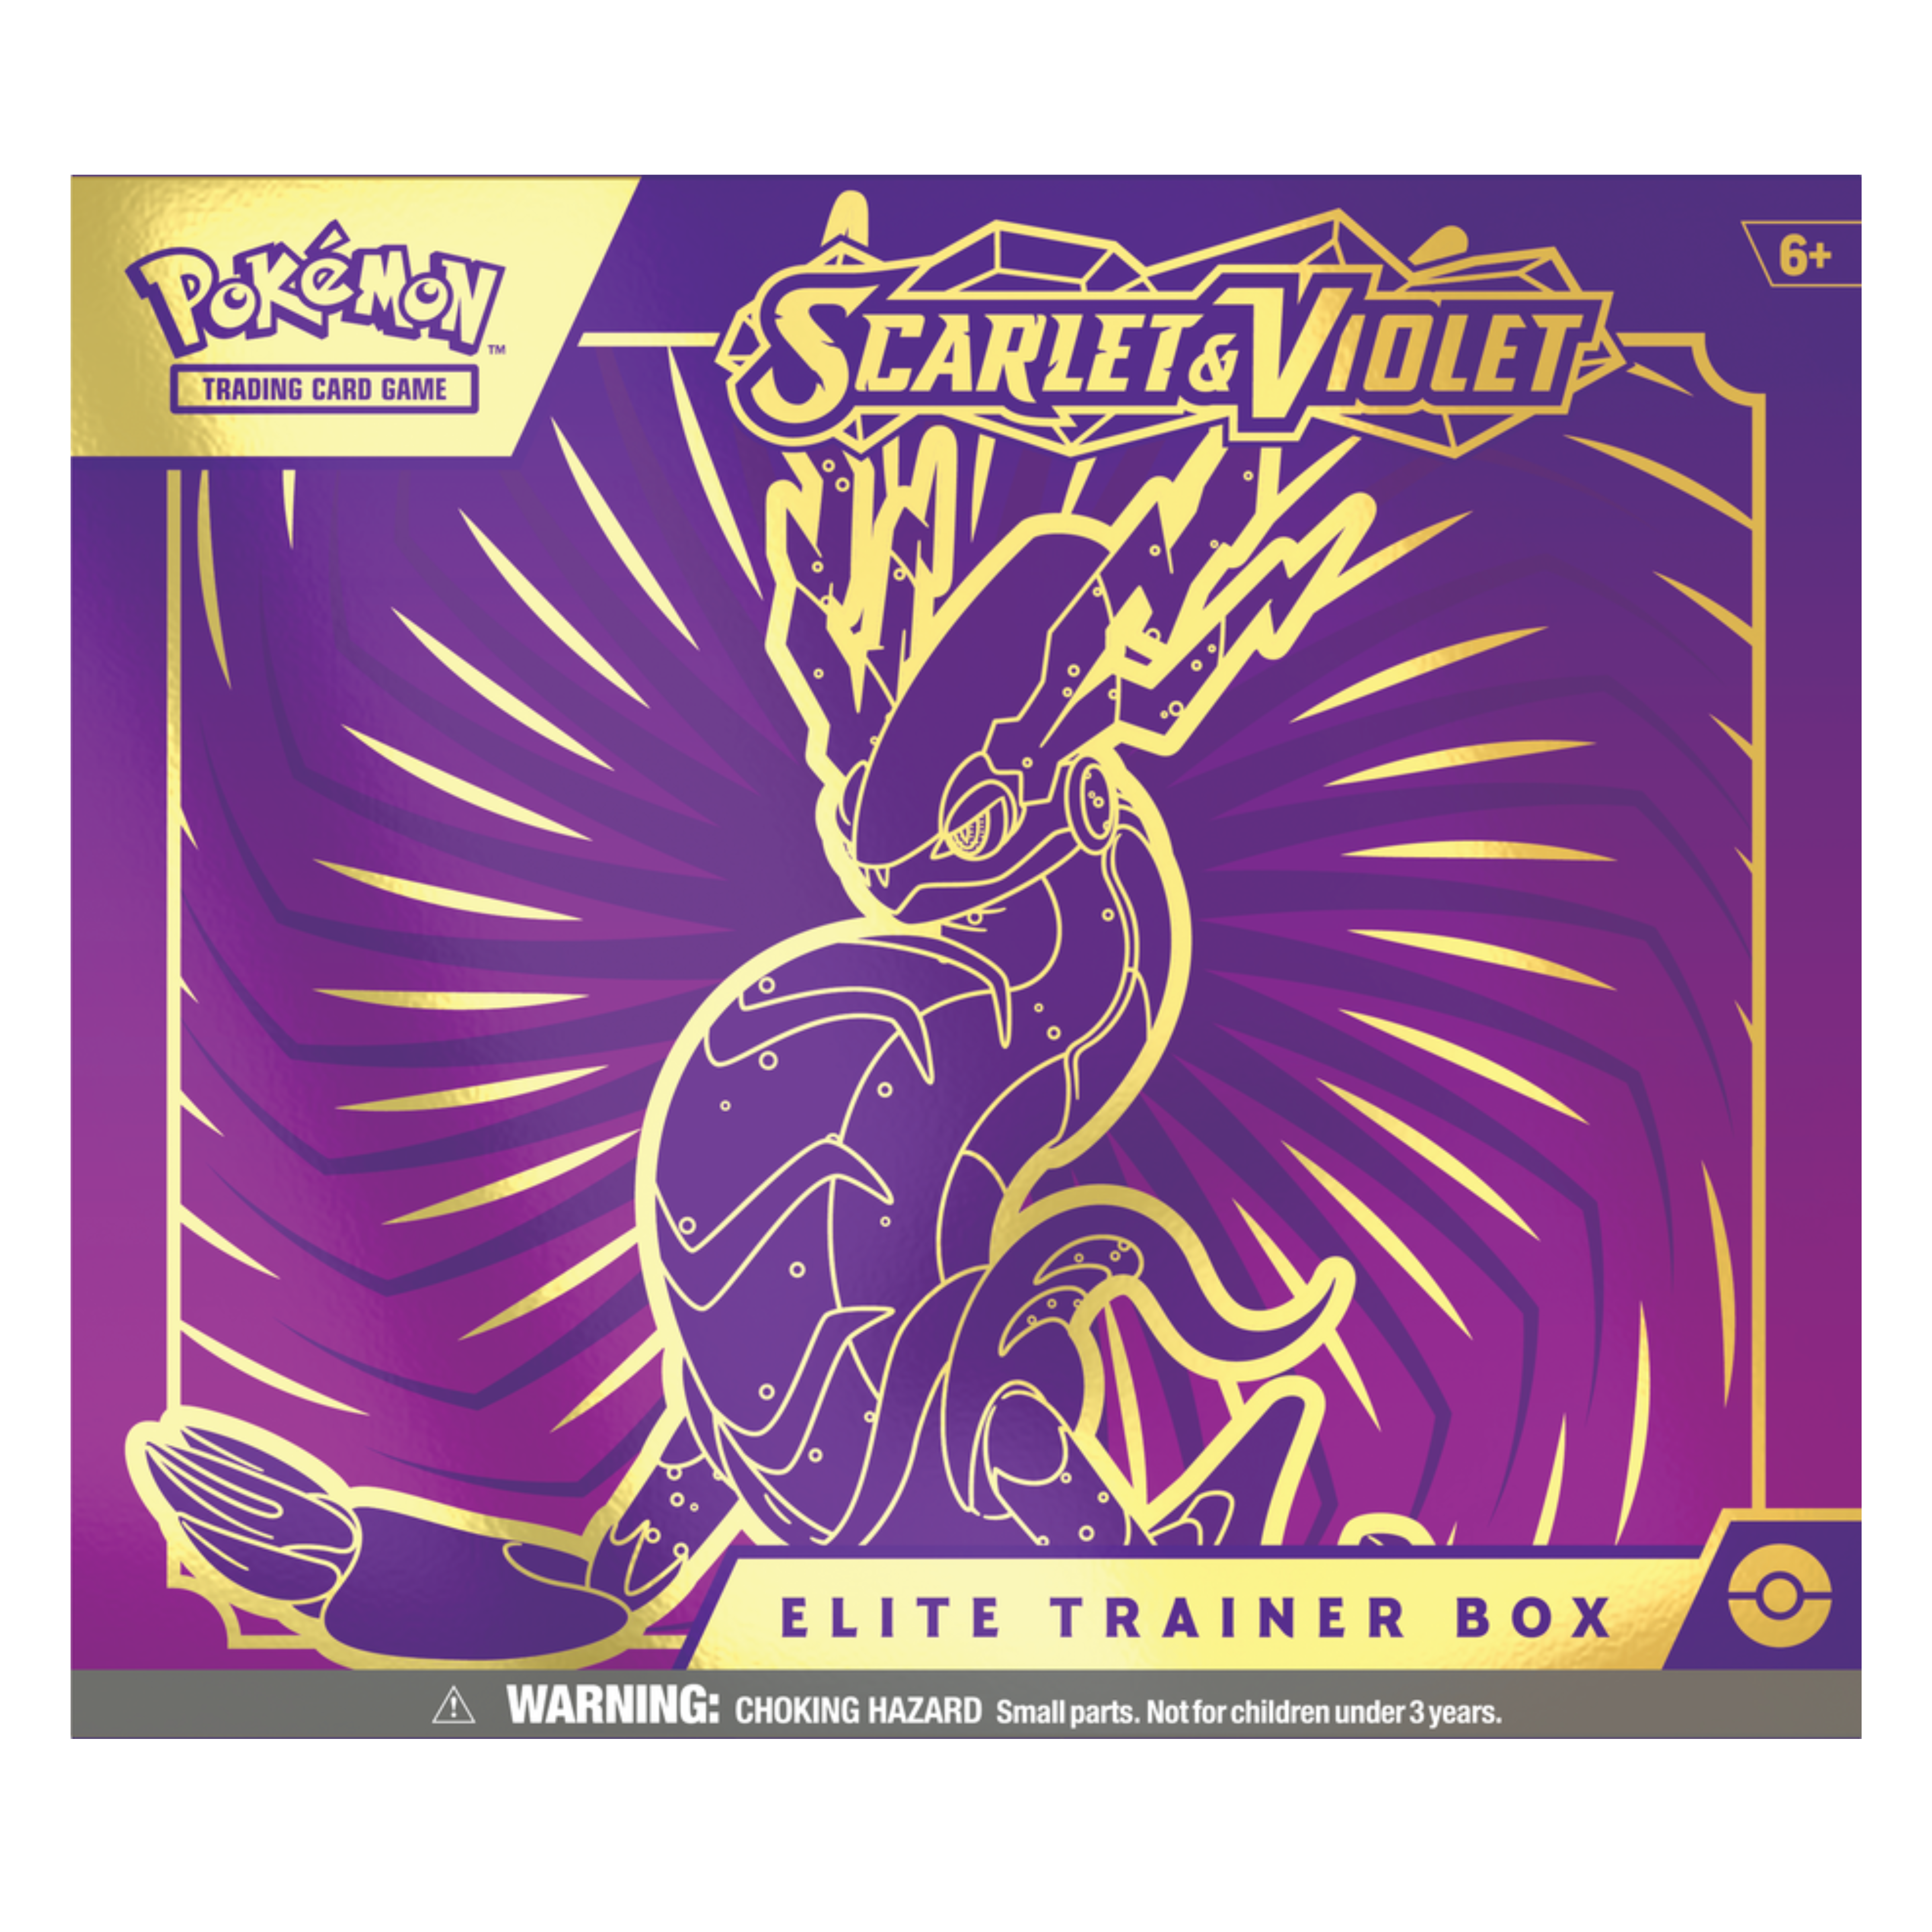 WINTER SALE - SV1 - Scarlet & Violet Elite Trainer Box (Koraidon or Miraidon)